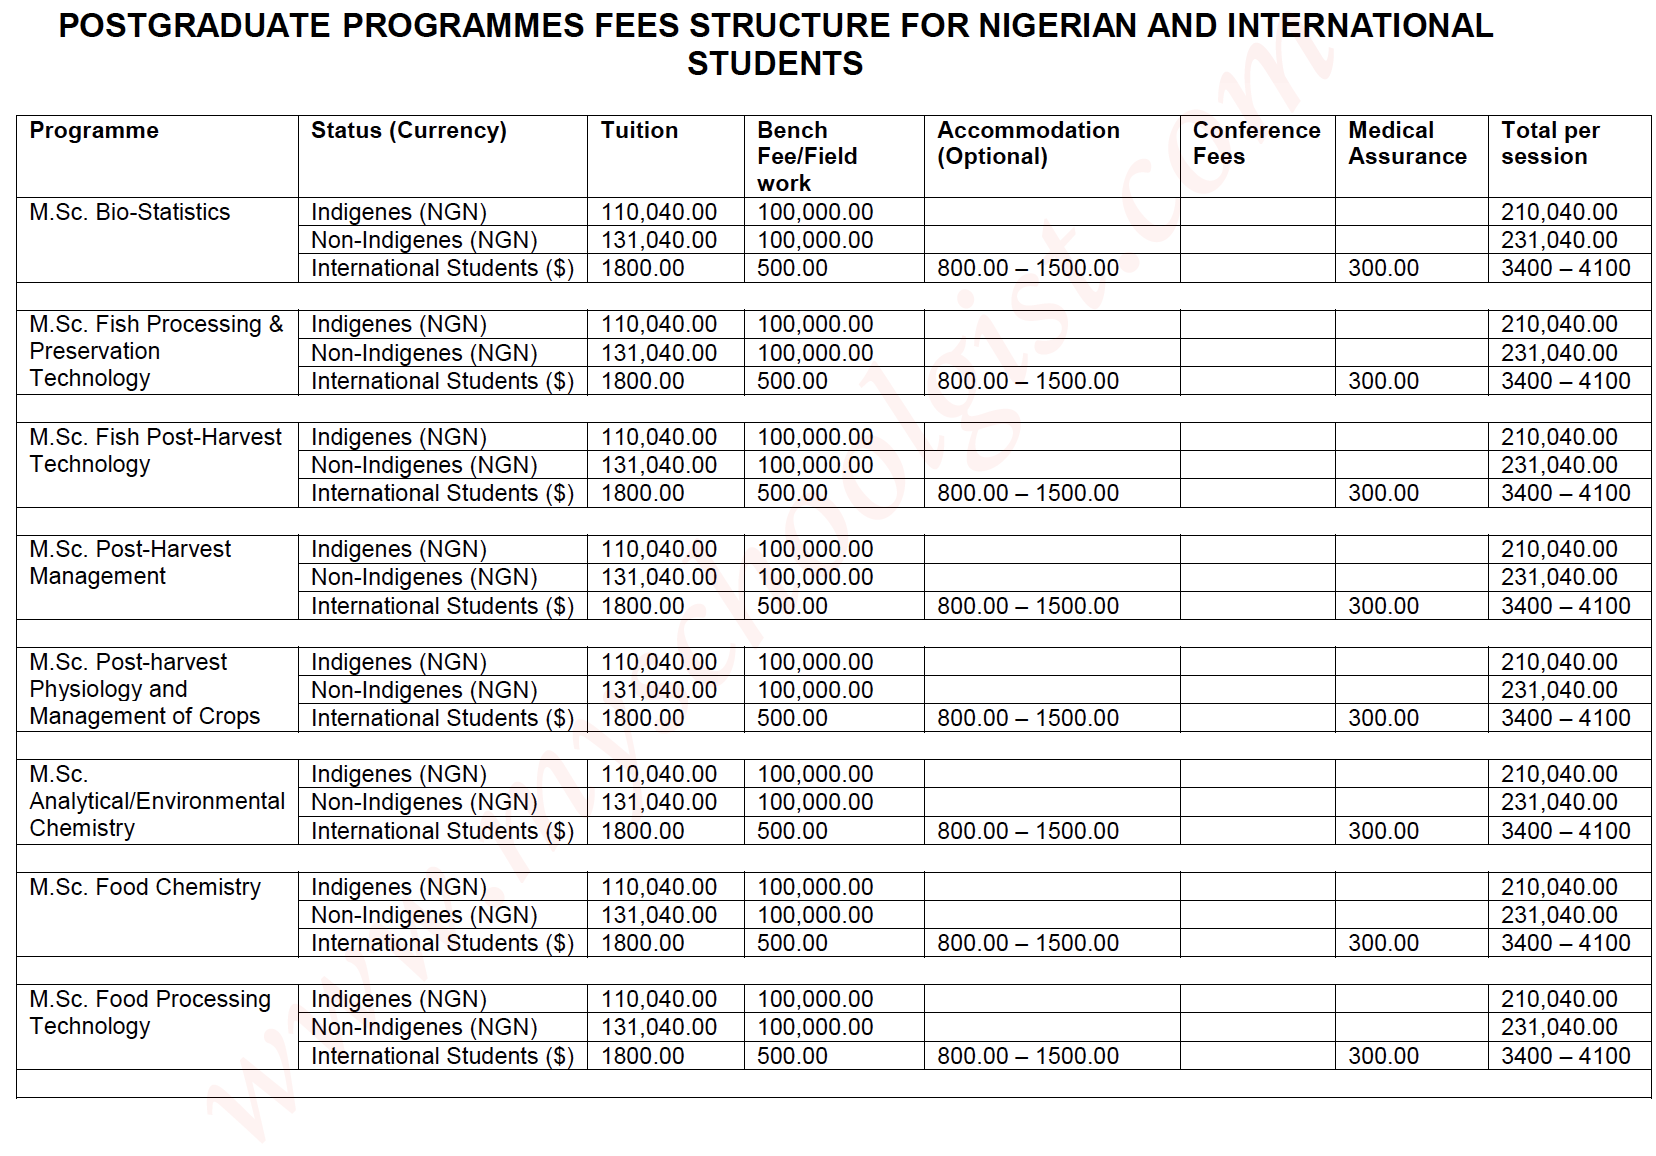 BSU Postgraduate School fees